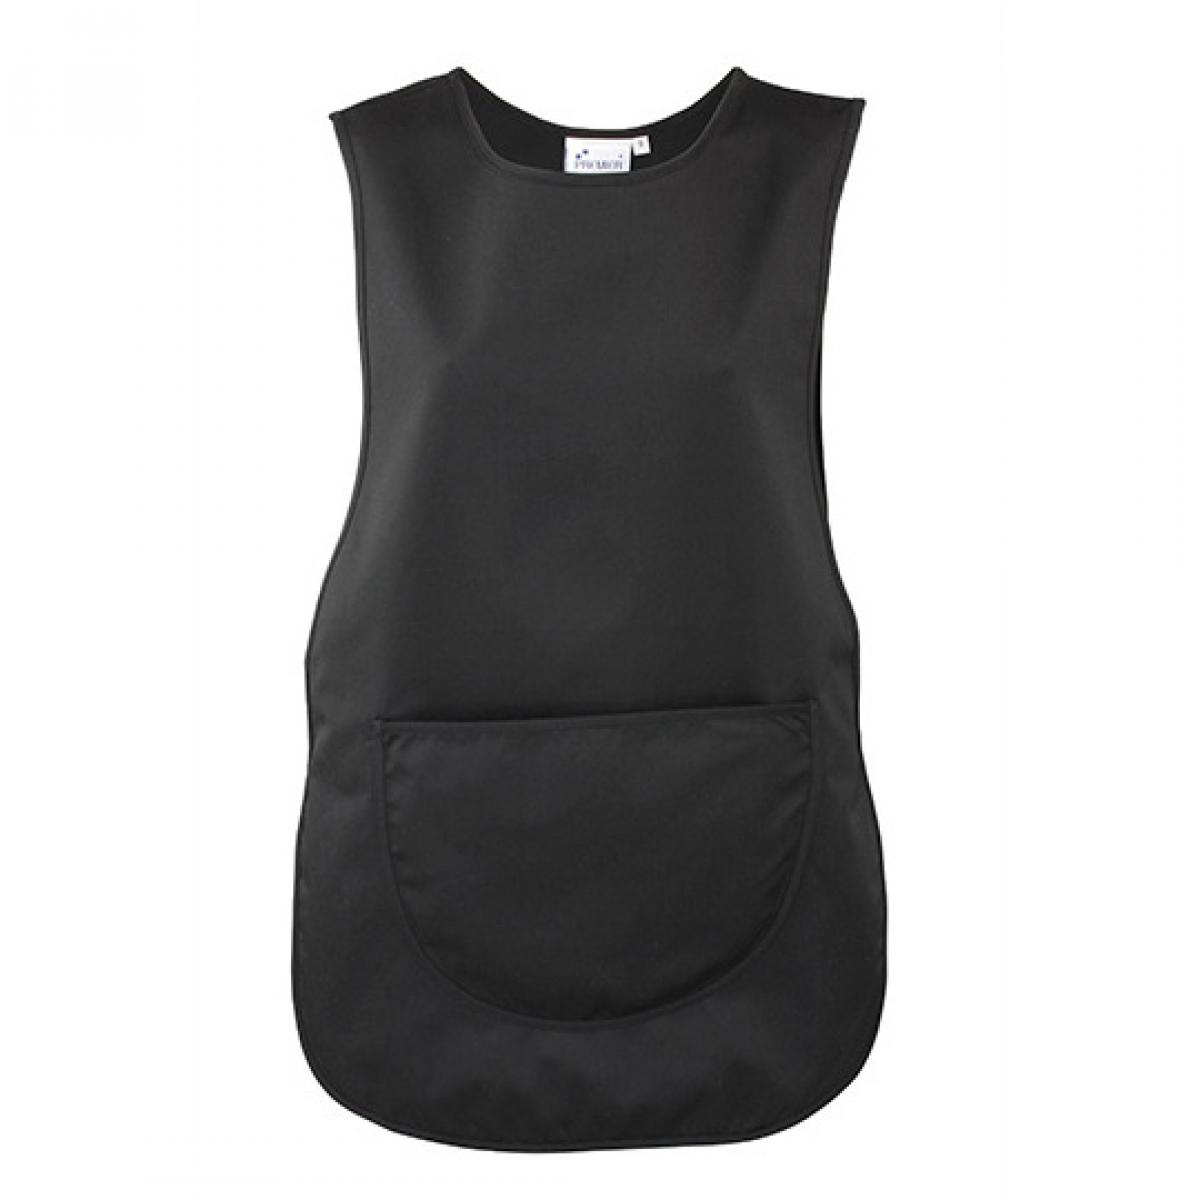 Hersteller: Premier Workwear Herstellernummer: PR171 Artikelbezeichnung: Women`s Pocket Tabard - Waschbar bis 60 °C Farbe: Black